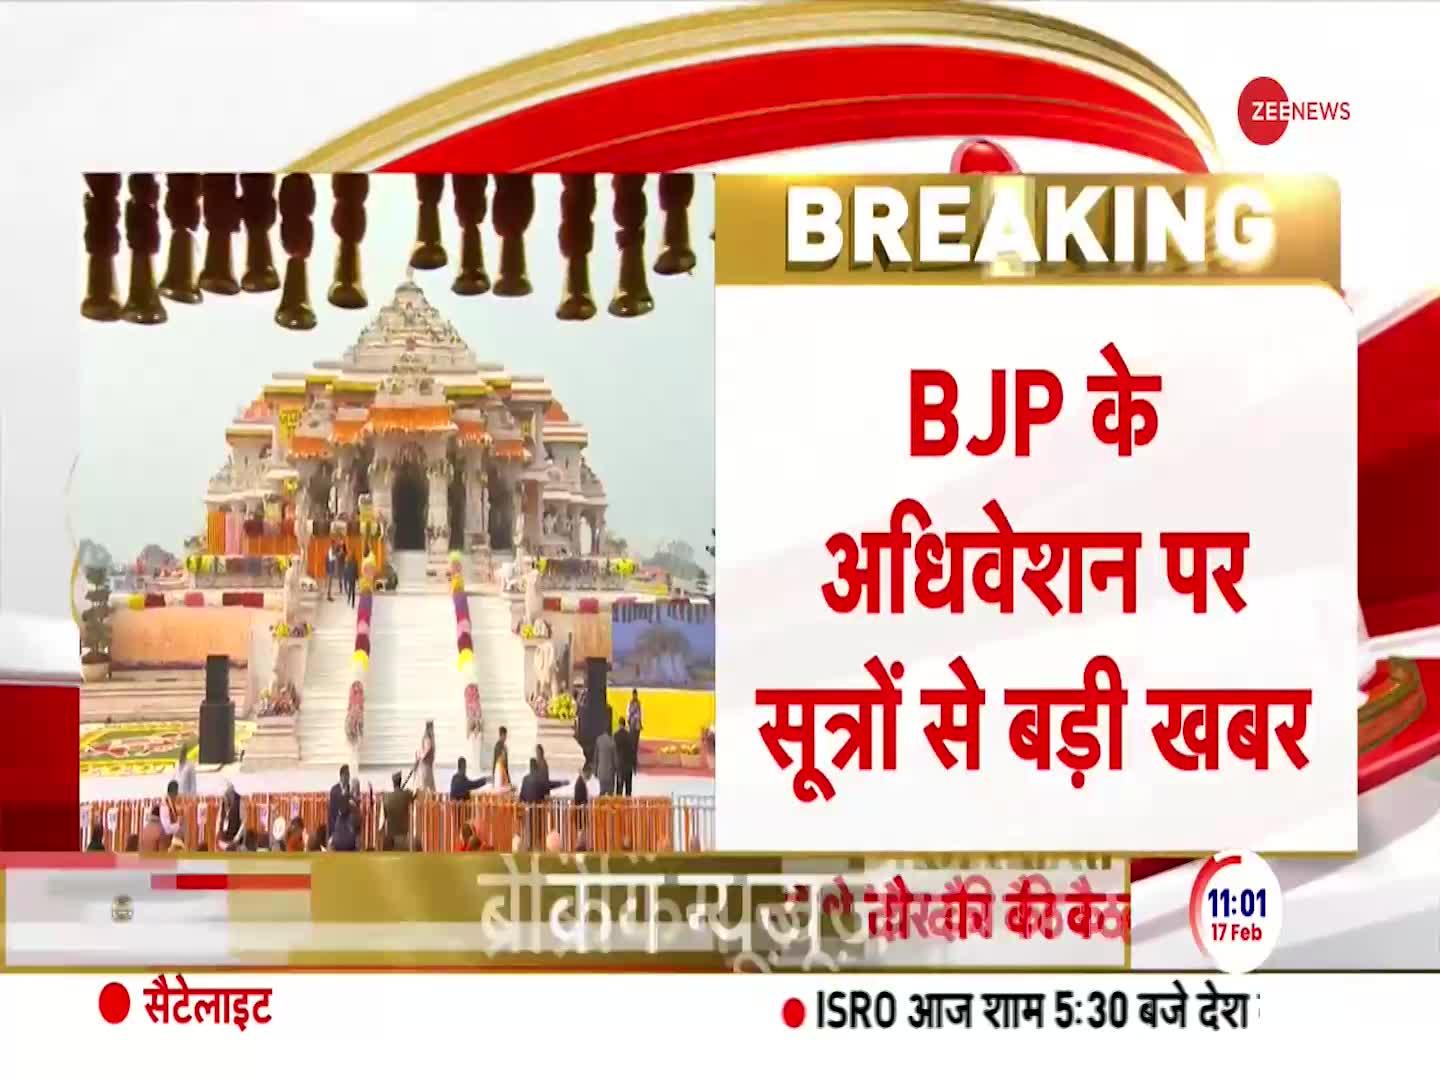 Breaking News: अधिवेशन में राम मंदिर प्राण प्रतिष्ठा पर प्रस्ताव ला सकती है BJP